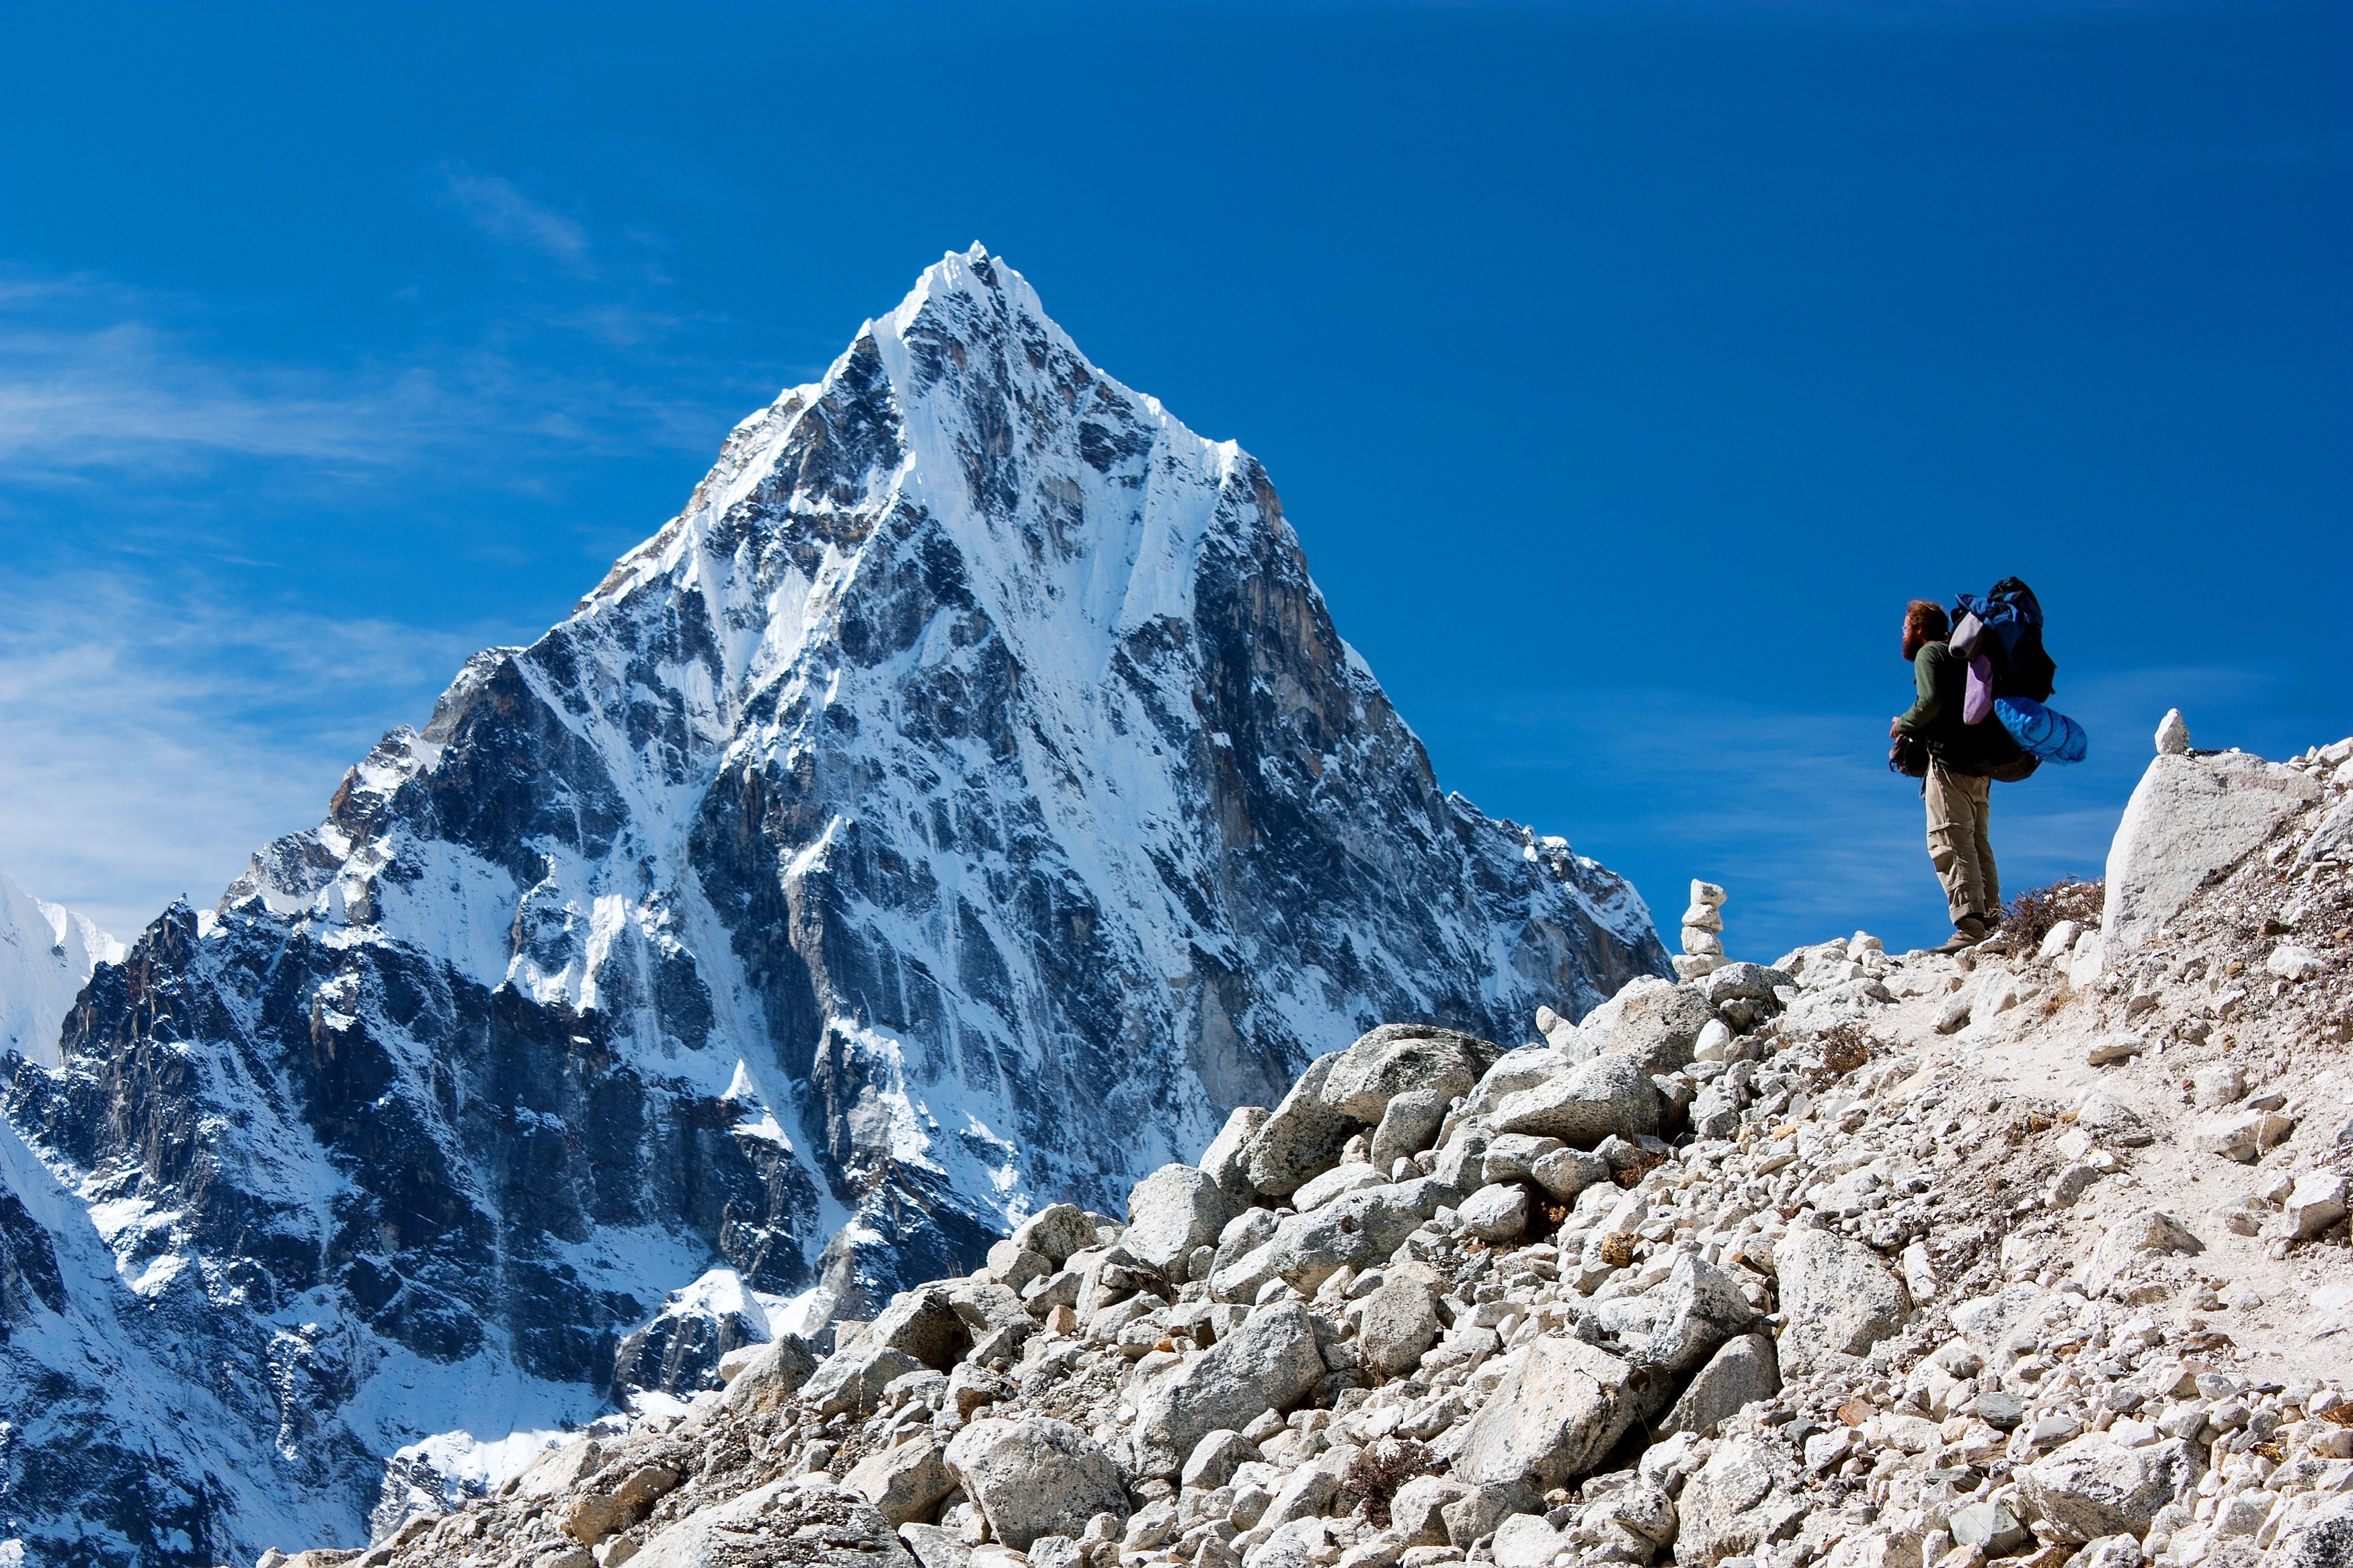 Čína se rozhodla zakročit a zavřít základní tábor na své straně hory Mount Everest pro ty, co nemají povolení k výstupu